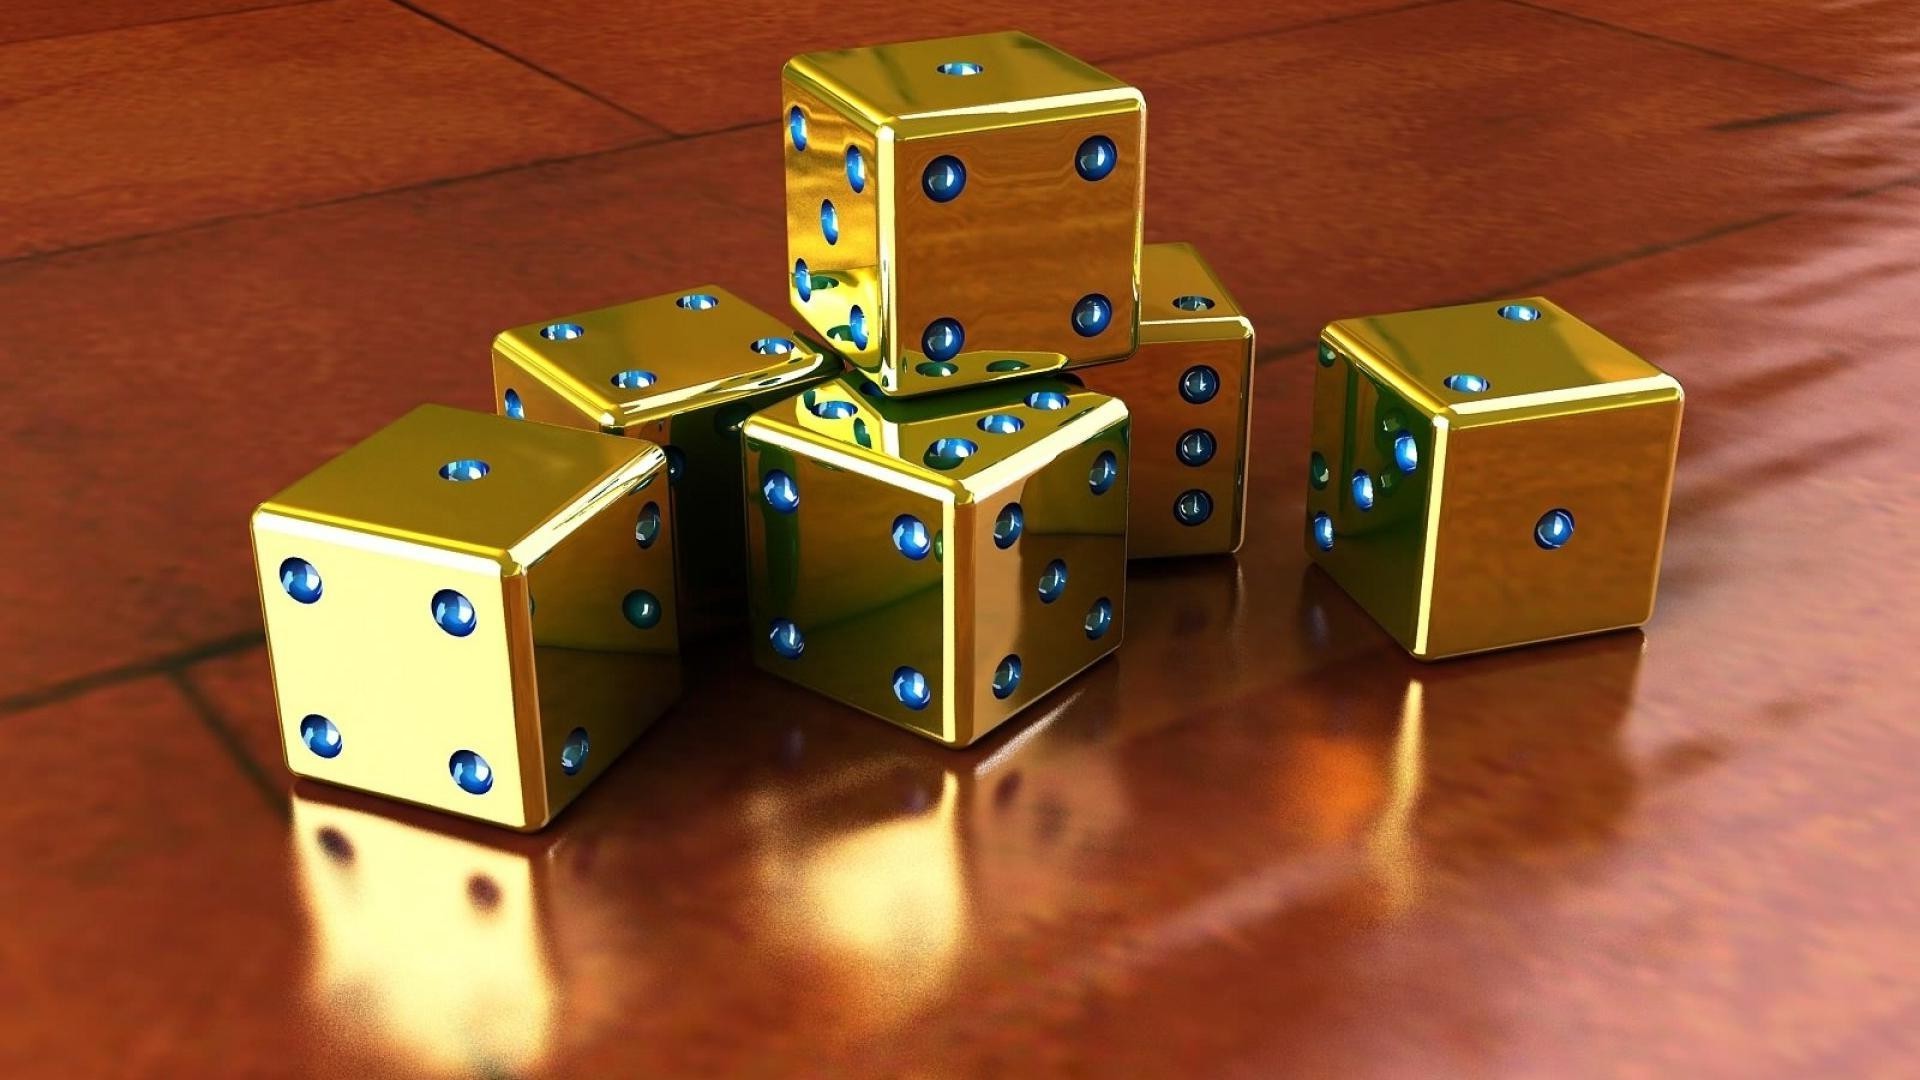 видео игры коробка отдых кости азартные игры удачи игры игрушка удовольствие отдых казино ретро дело риск один